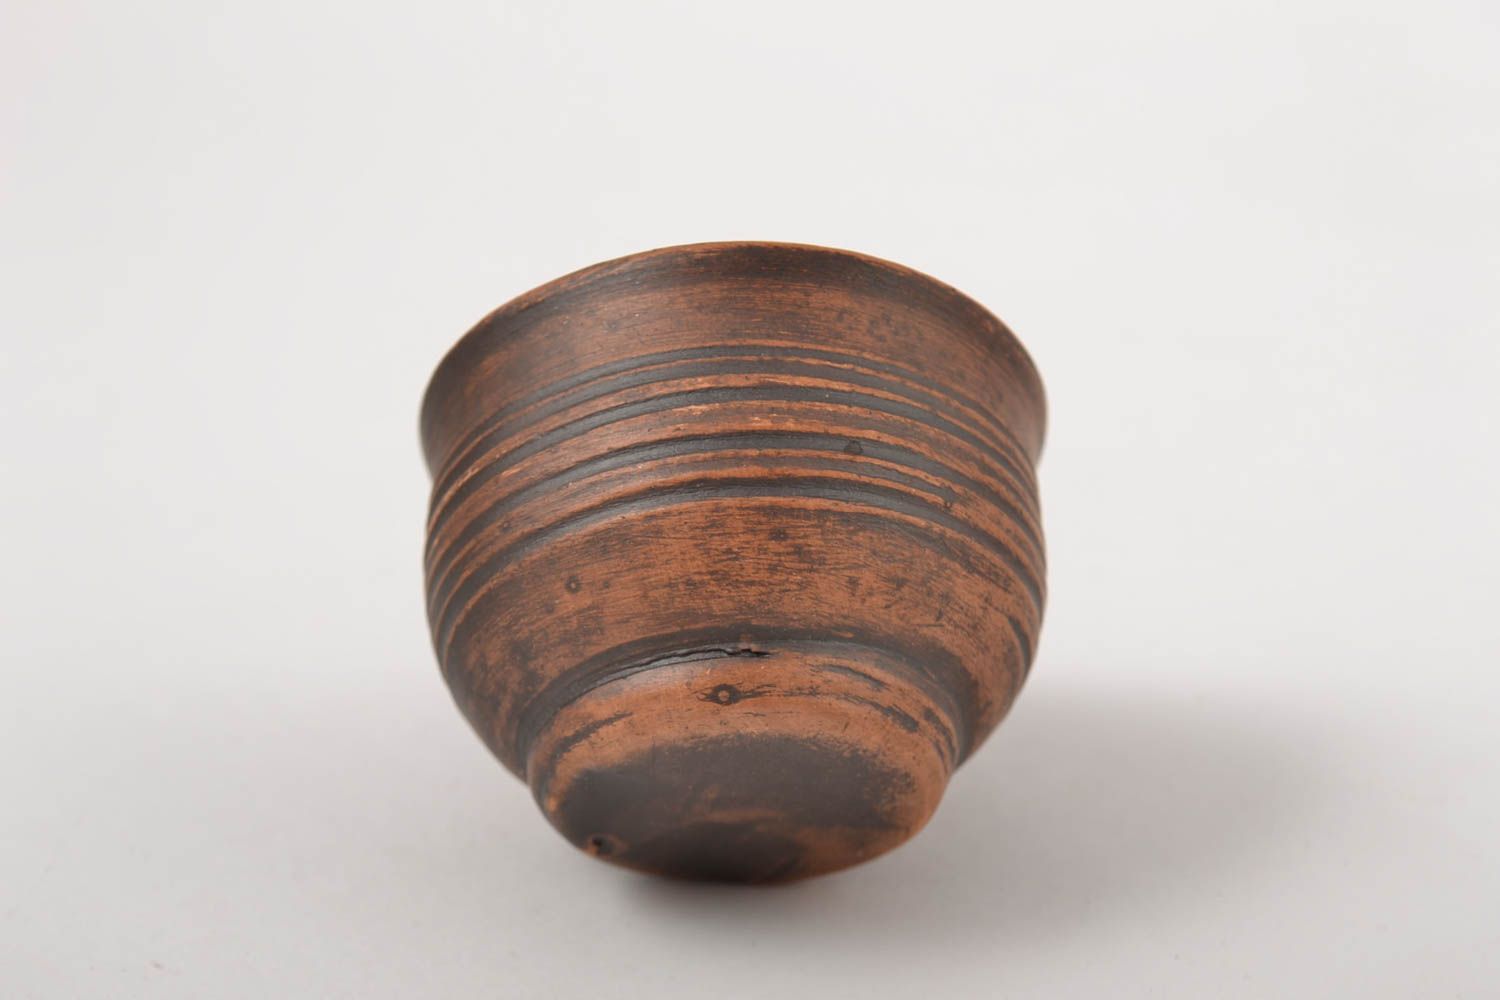 Pinnchen Schnaps handmade Schnapsglas Keramik ungewöhnlich Geschirr aus ton foto 4